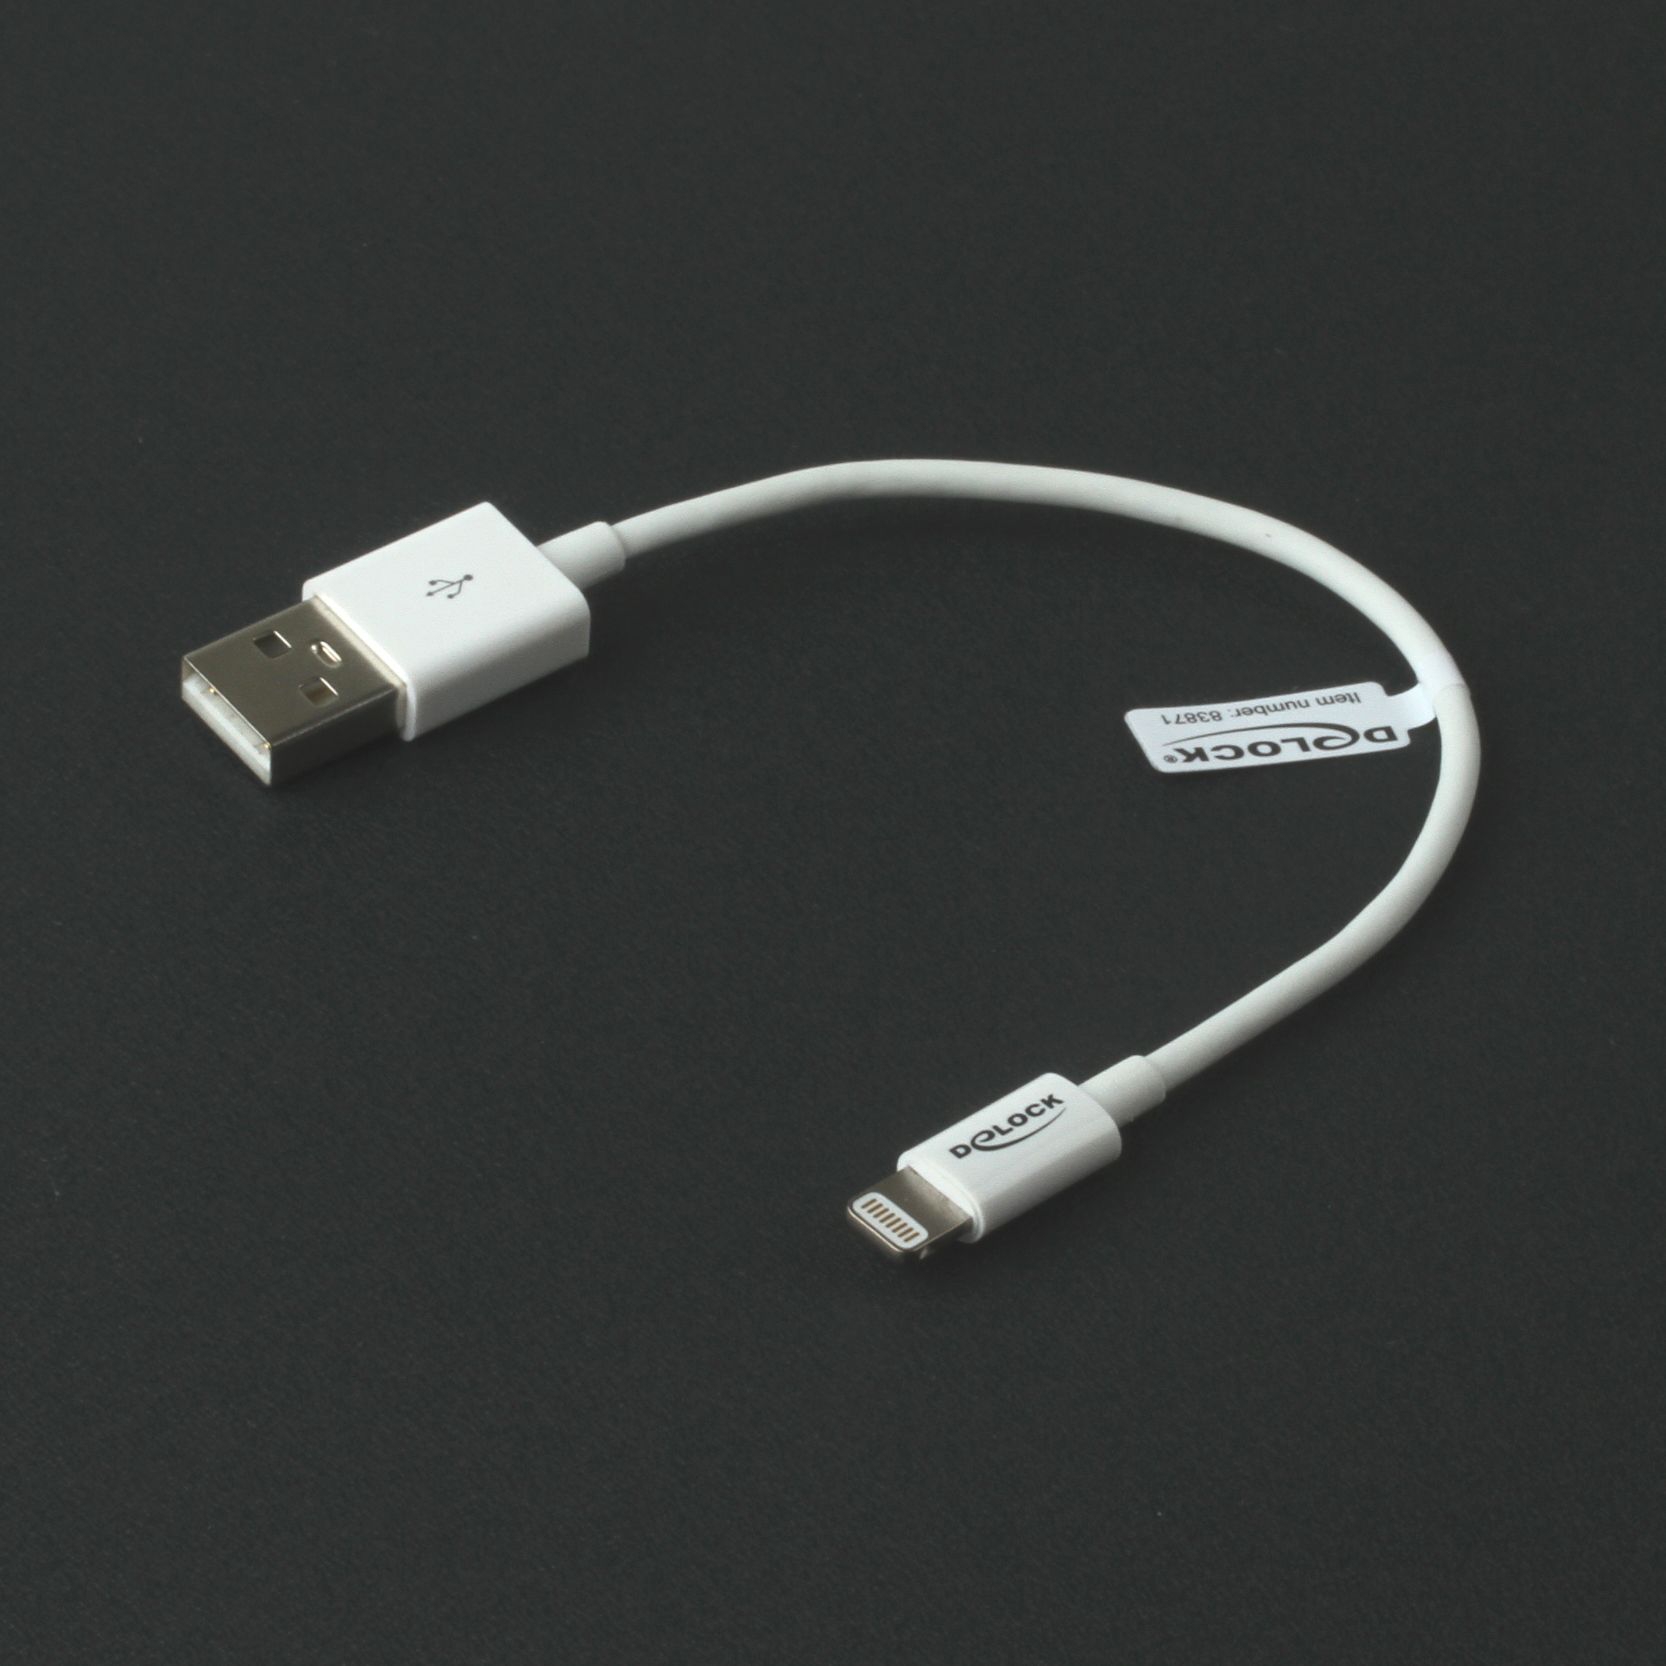 Lade- & Sync-Kabel für iPhone (für Apple Lightning-Port) 15cm